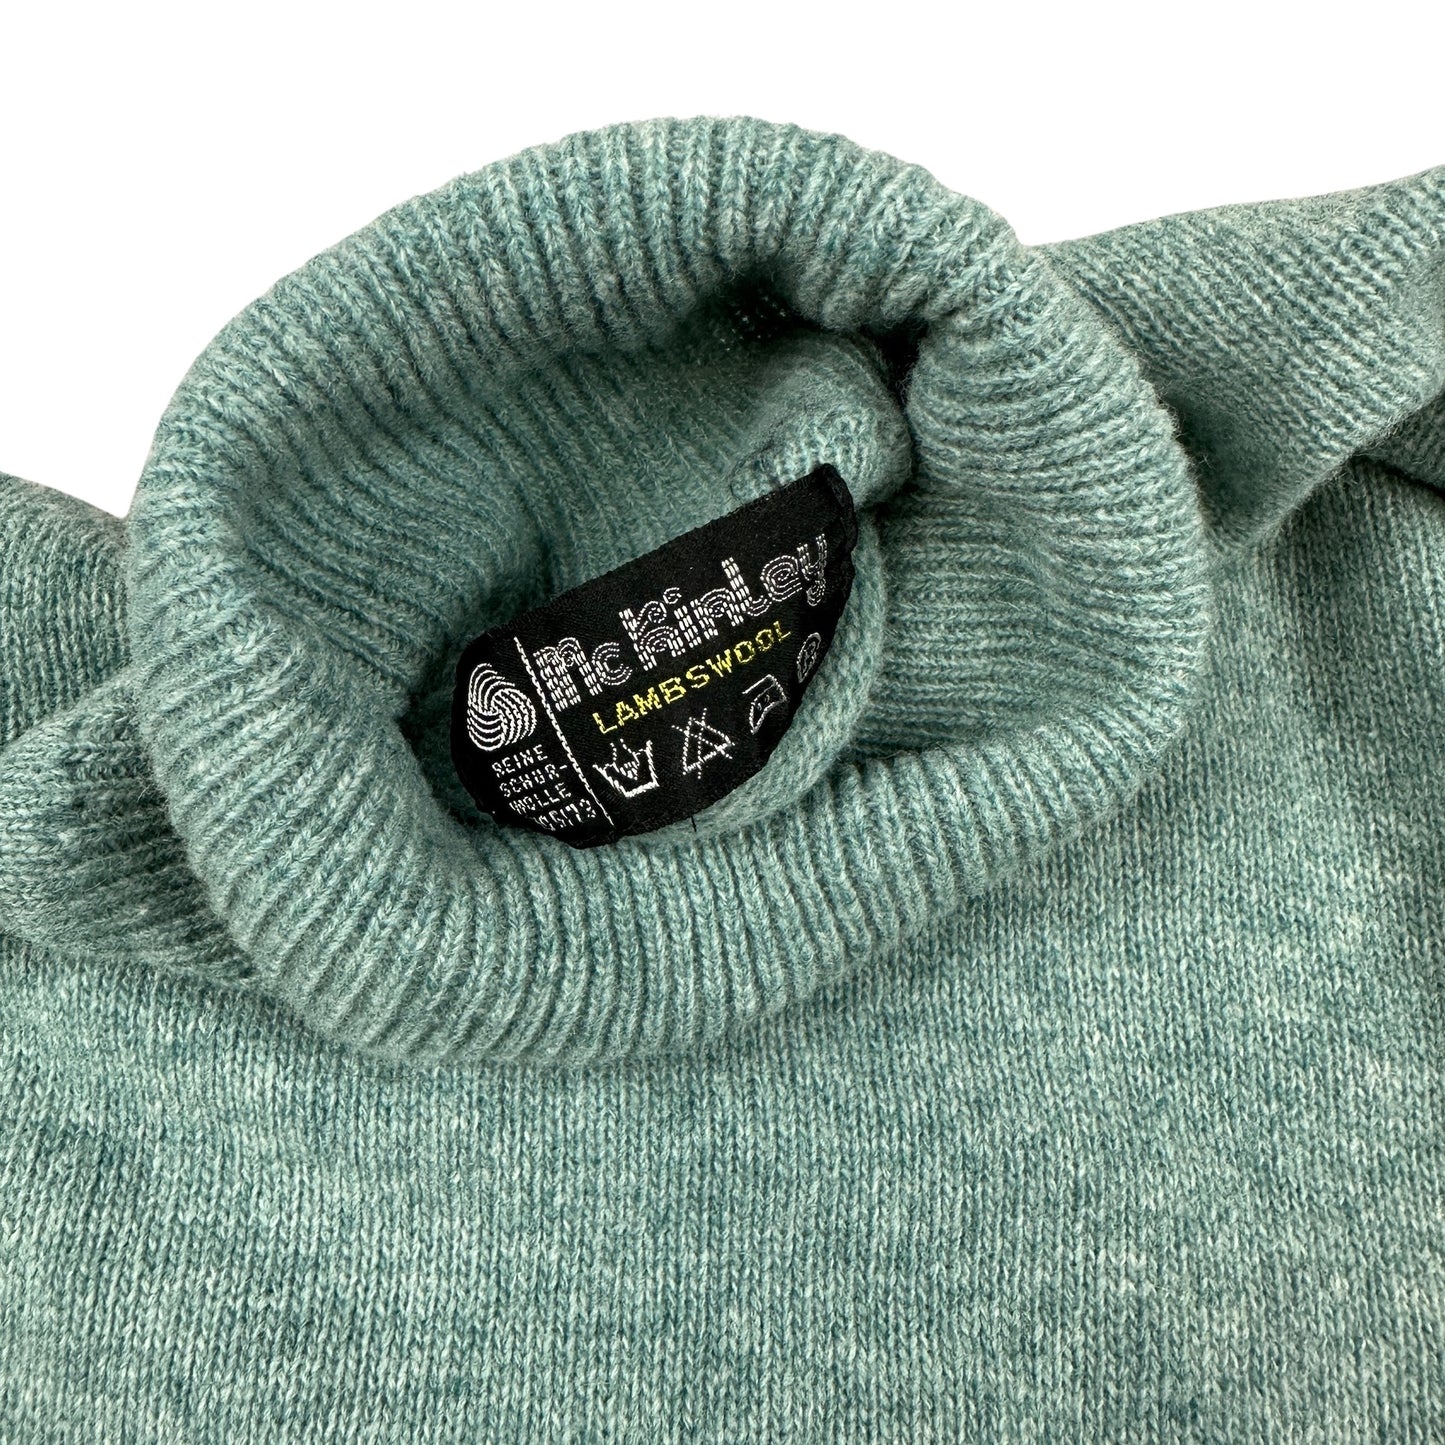 Vintage 80s Teal Wool Knit Turtle Neck Jumper 12